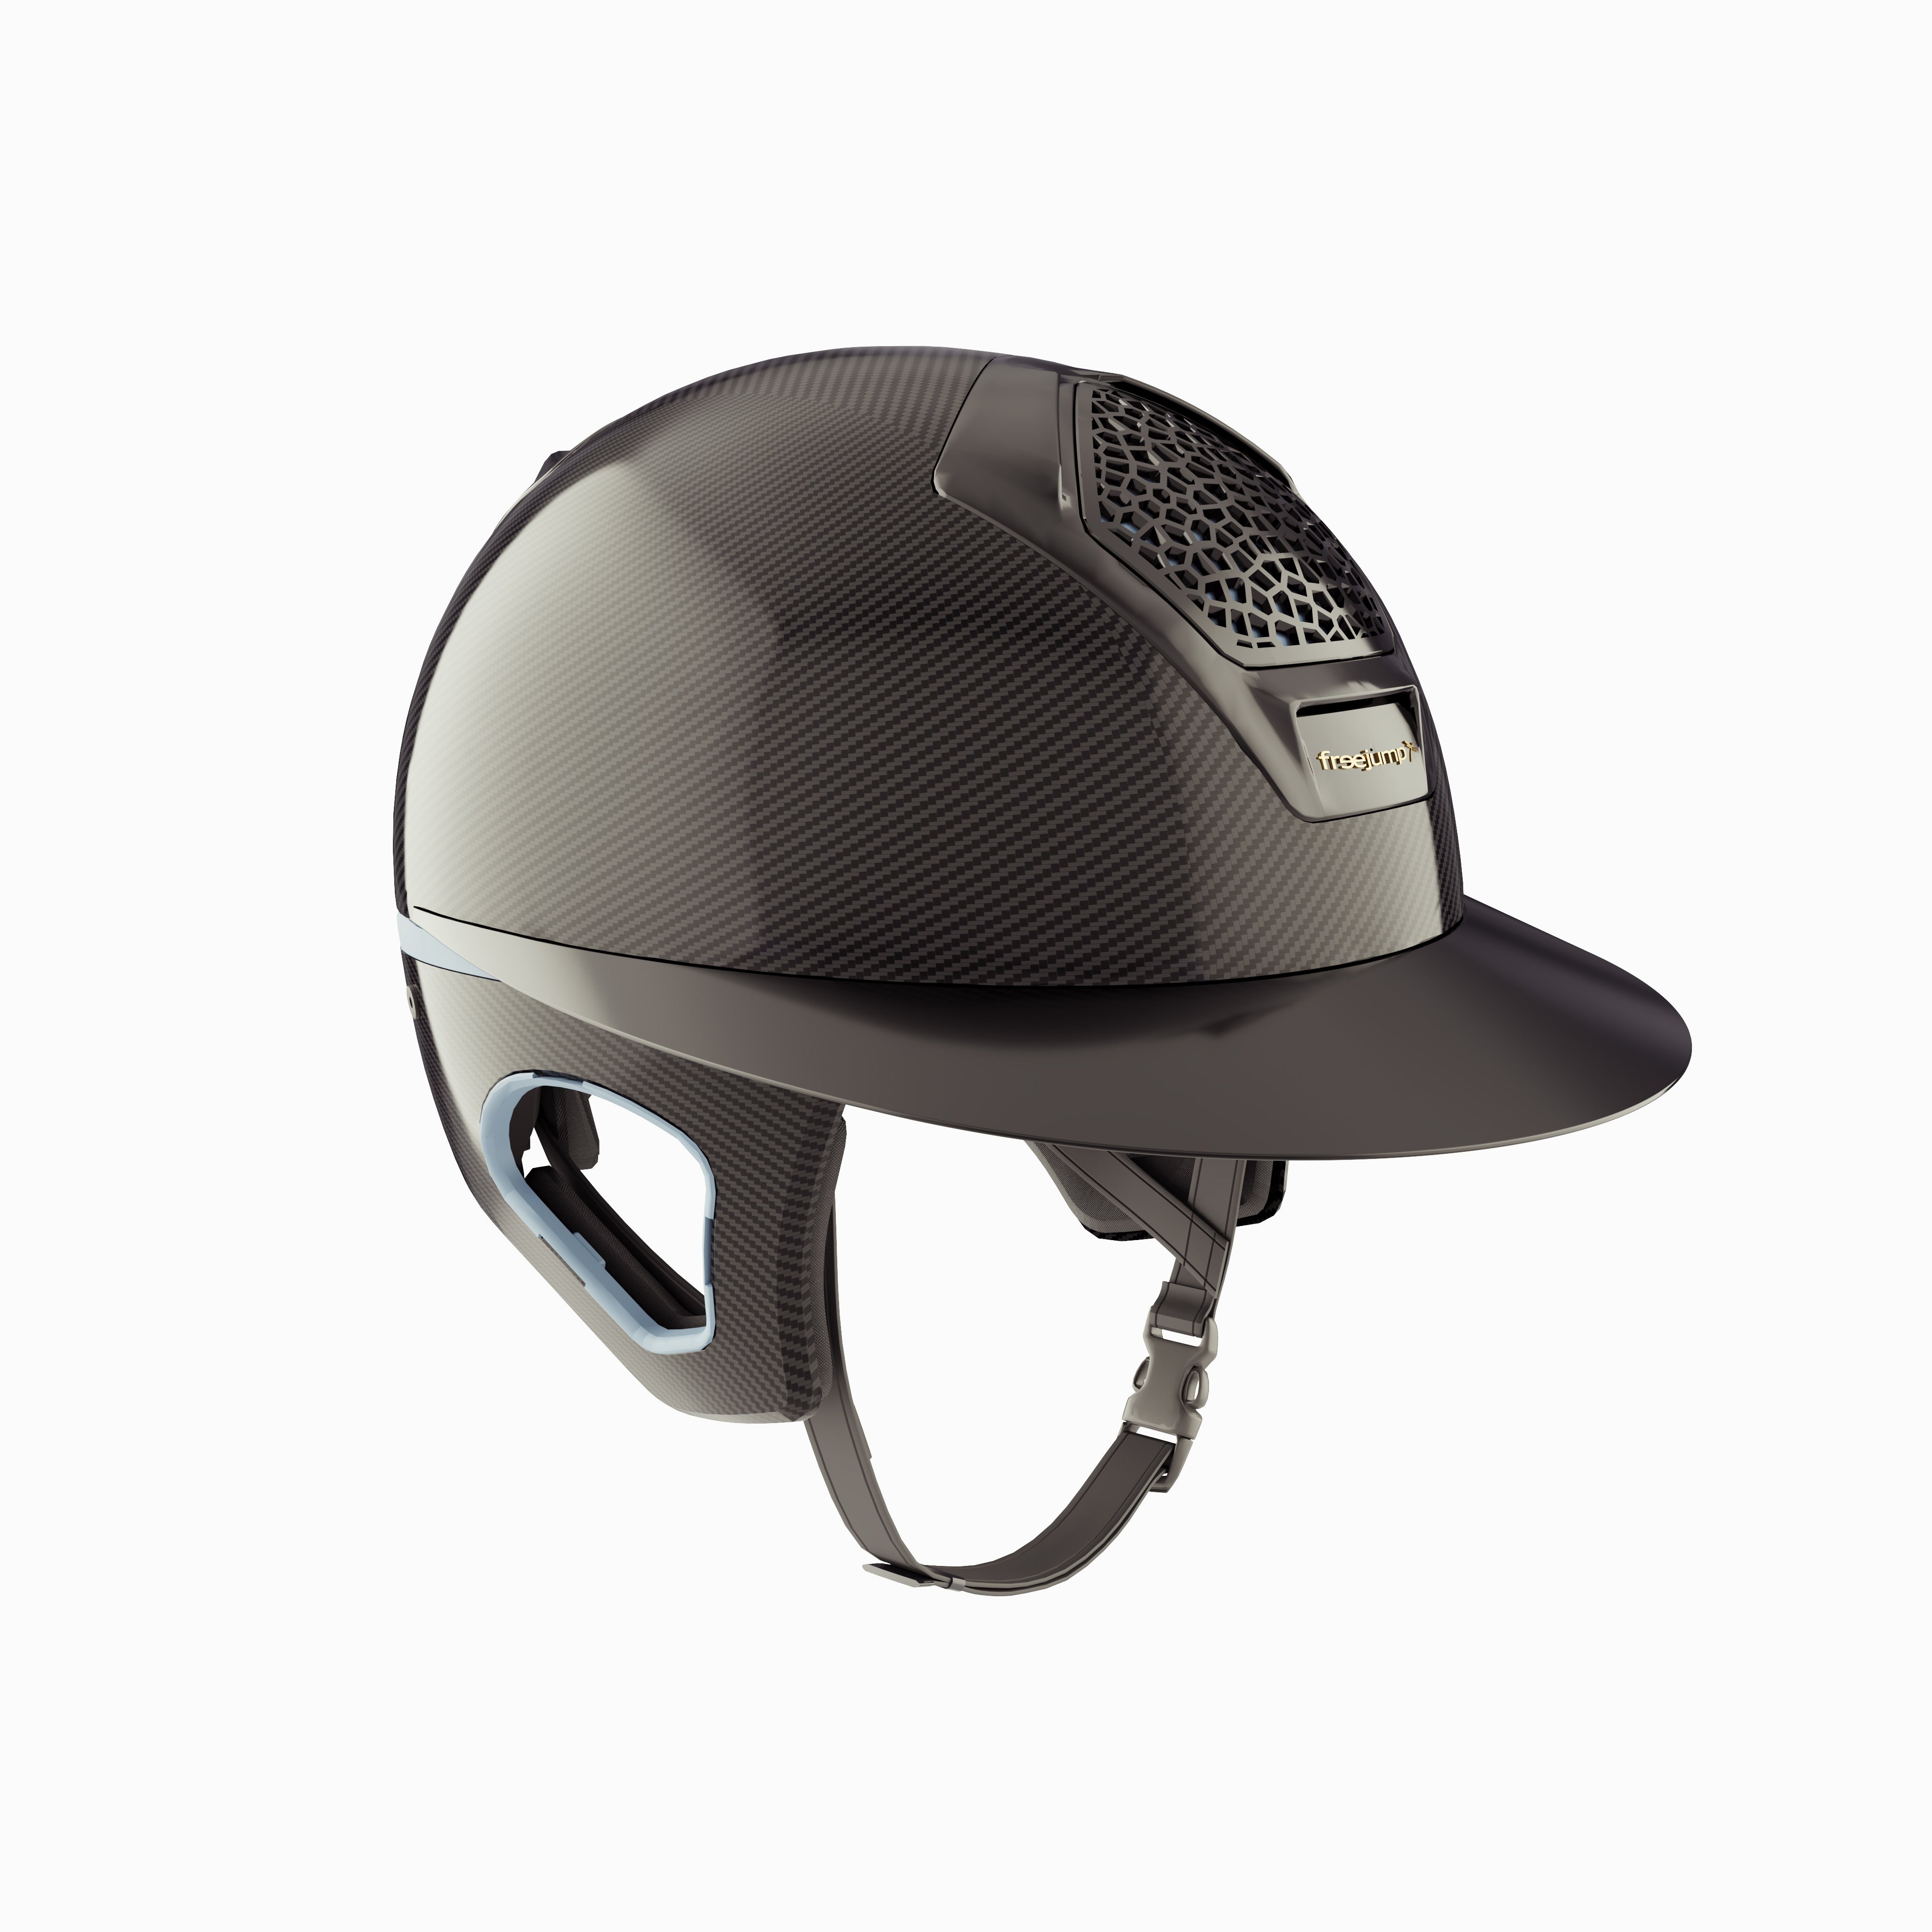 Voronoï Carbon Helmet With Temple Protection - Black/Sky Blue